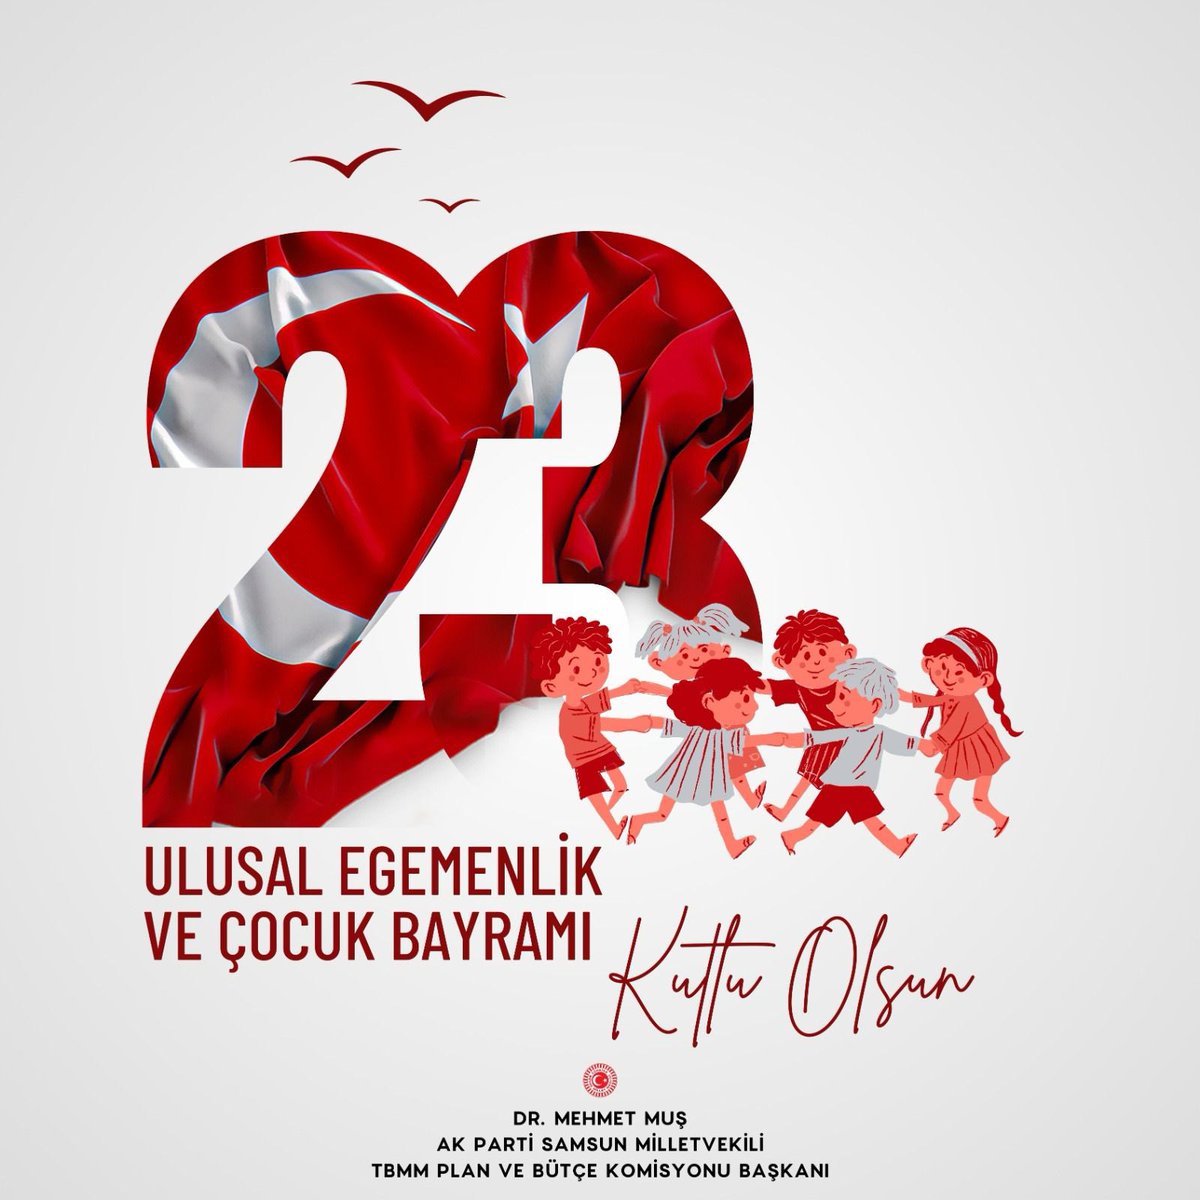 TBMM'nin açılışının 104. yılı ile 23 Nisan Ulusal Egemenlik ve Çocuk Bayramı kutlu olsun. Cumhuriyetimizin kurucusu, TBMM'nin ilk başkanı Gazi Mustafa Kemal Atatürk ile tüm şehit ve gazilerimizi rahmetle, minnetle yad ediyorum.